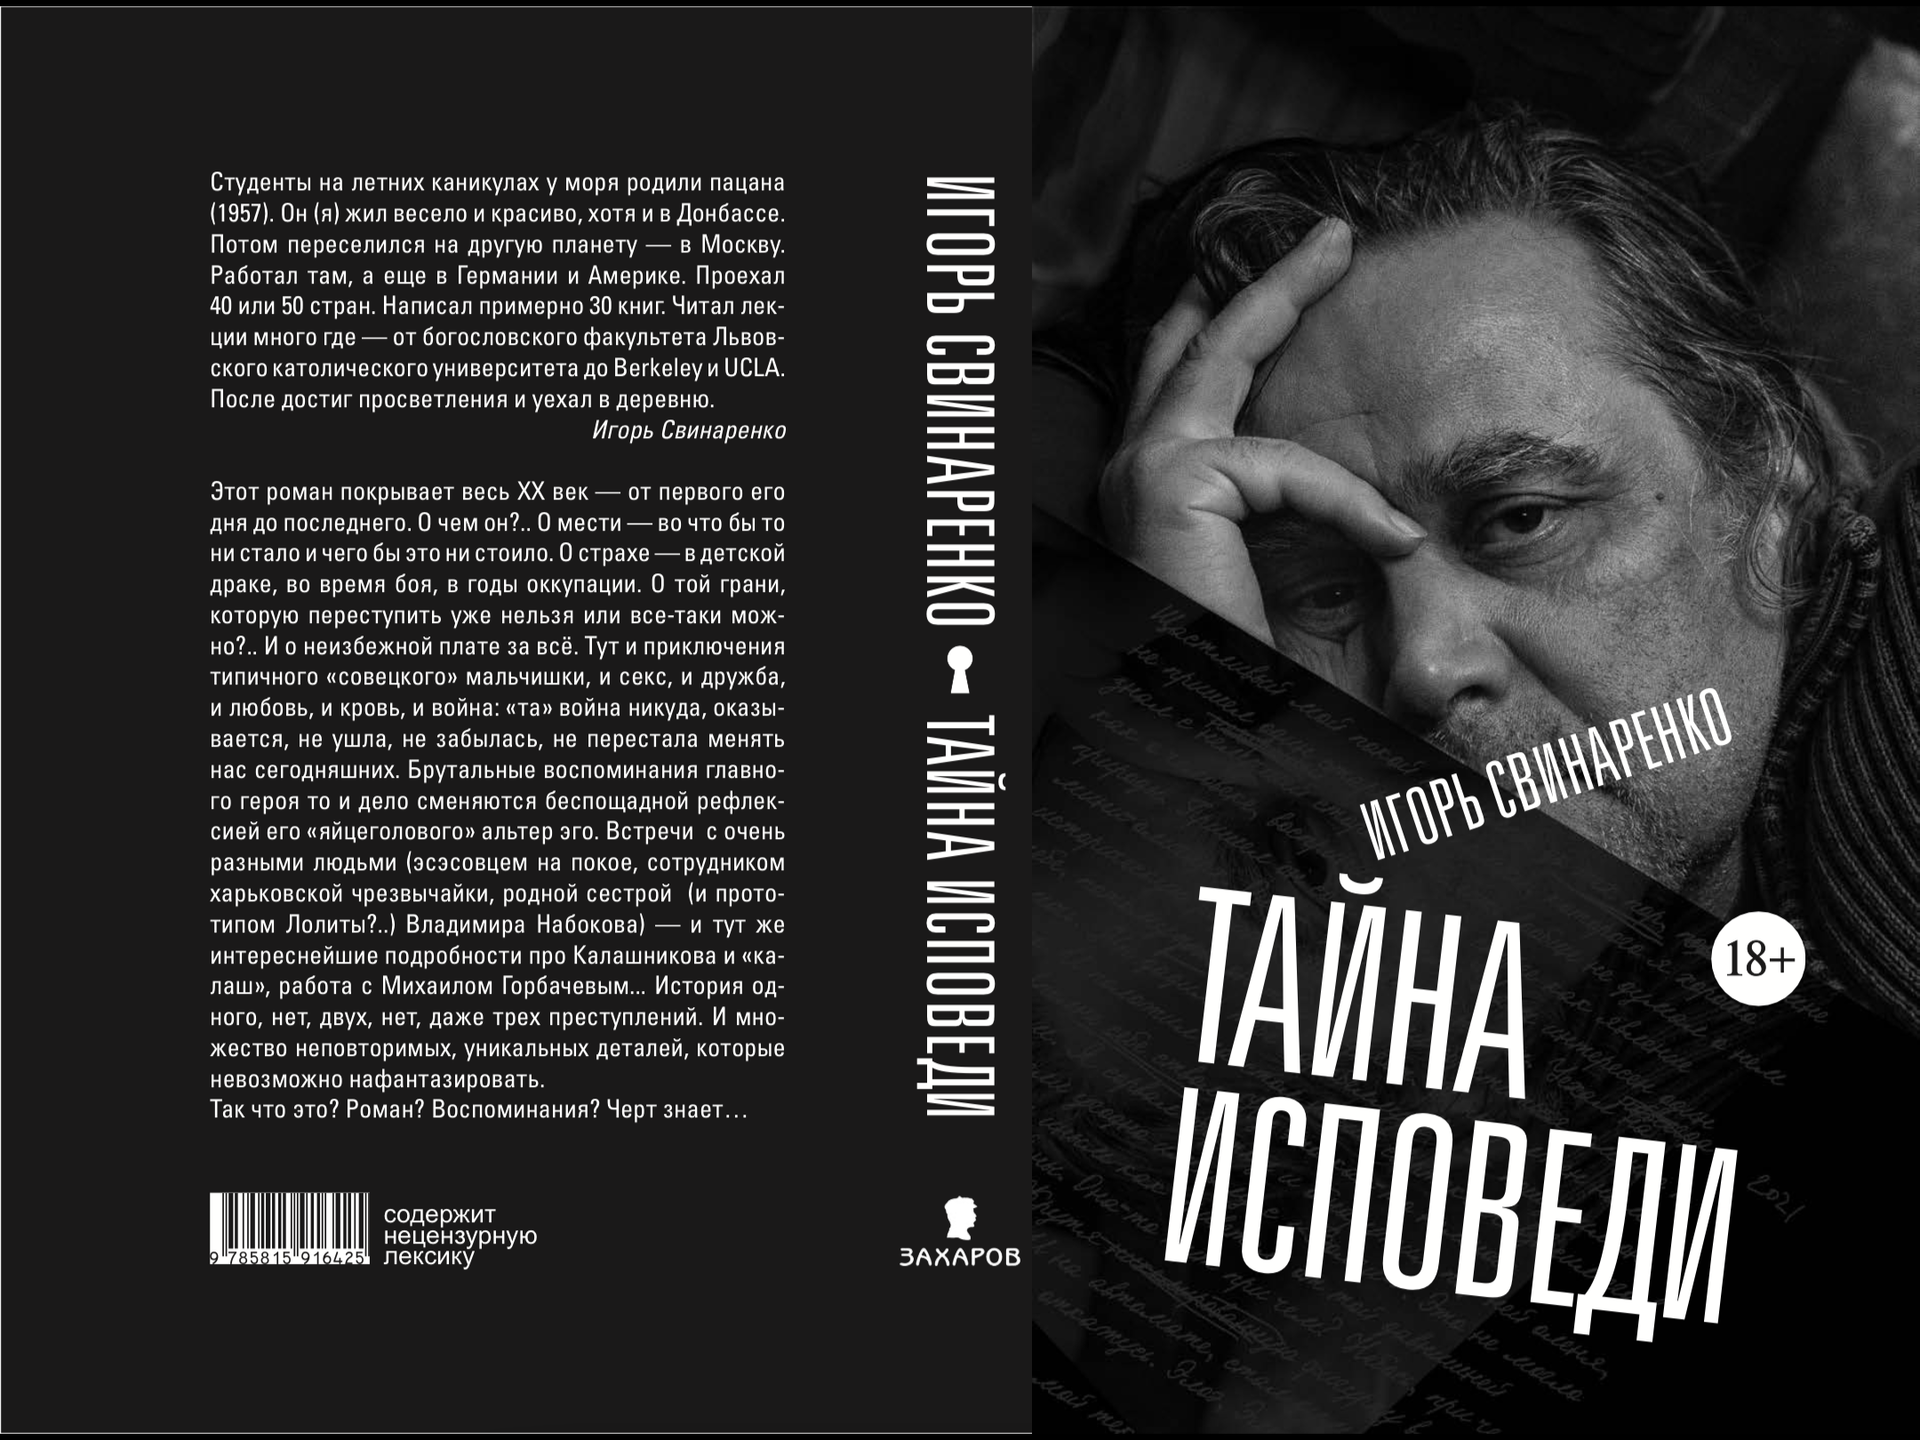 ХХ век кровоточит в книге-исповеди Игоря Свинаренко